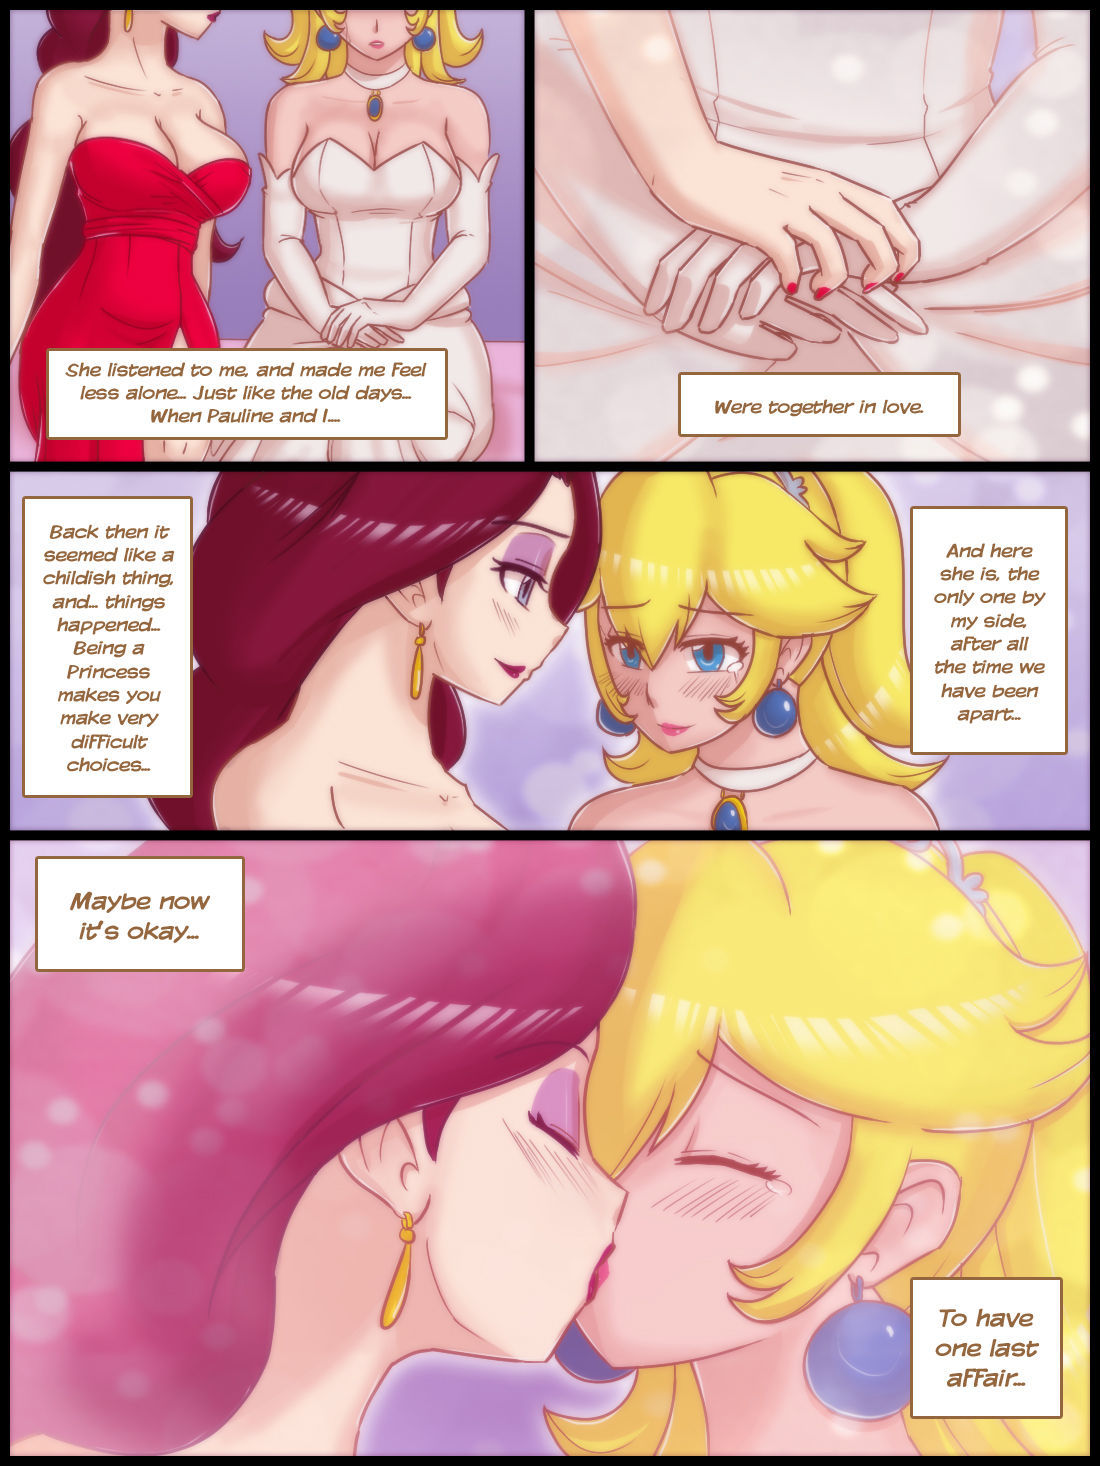 Last Affair (Super Mario Bros.) page 3